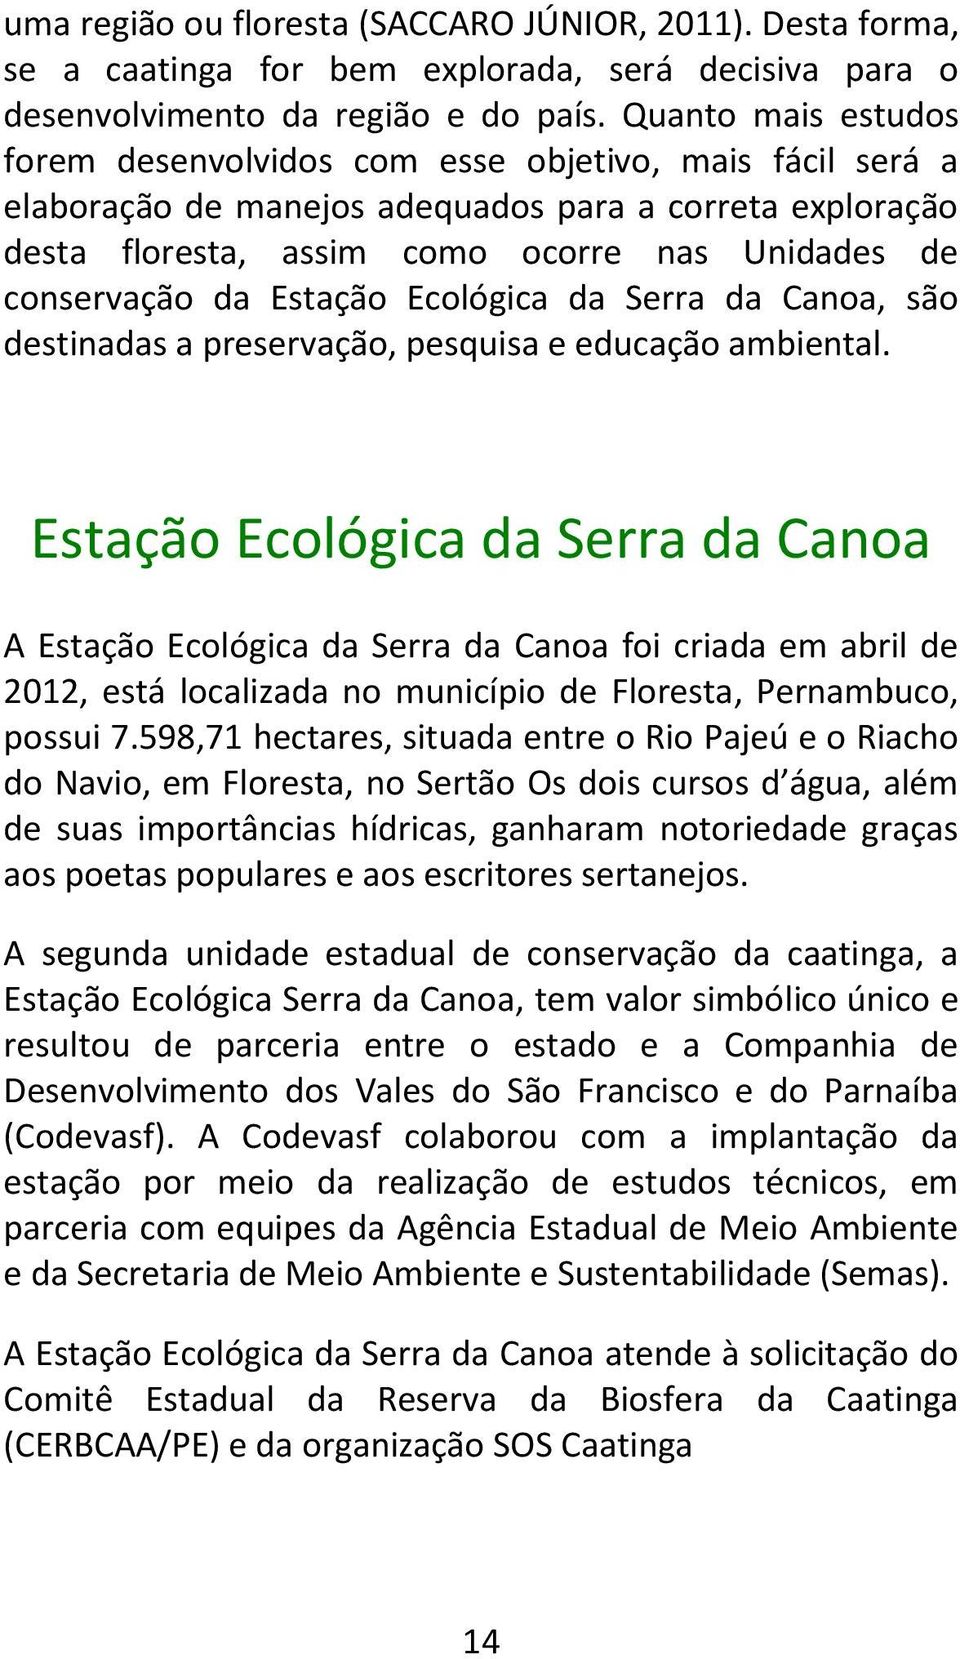 Estação Ecológica da Serra da Canoa, são destinadas a preservação, pesquisa e educação ambiental.